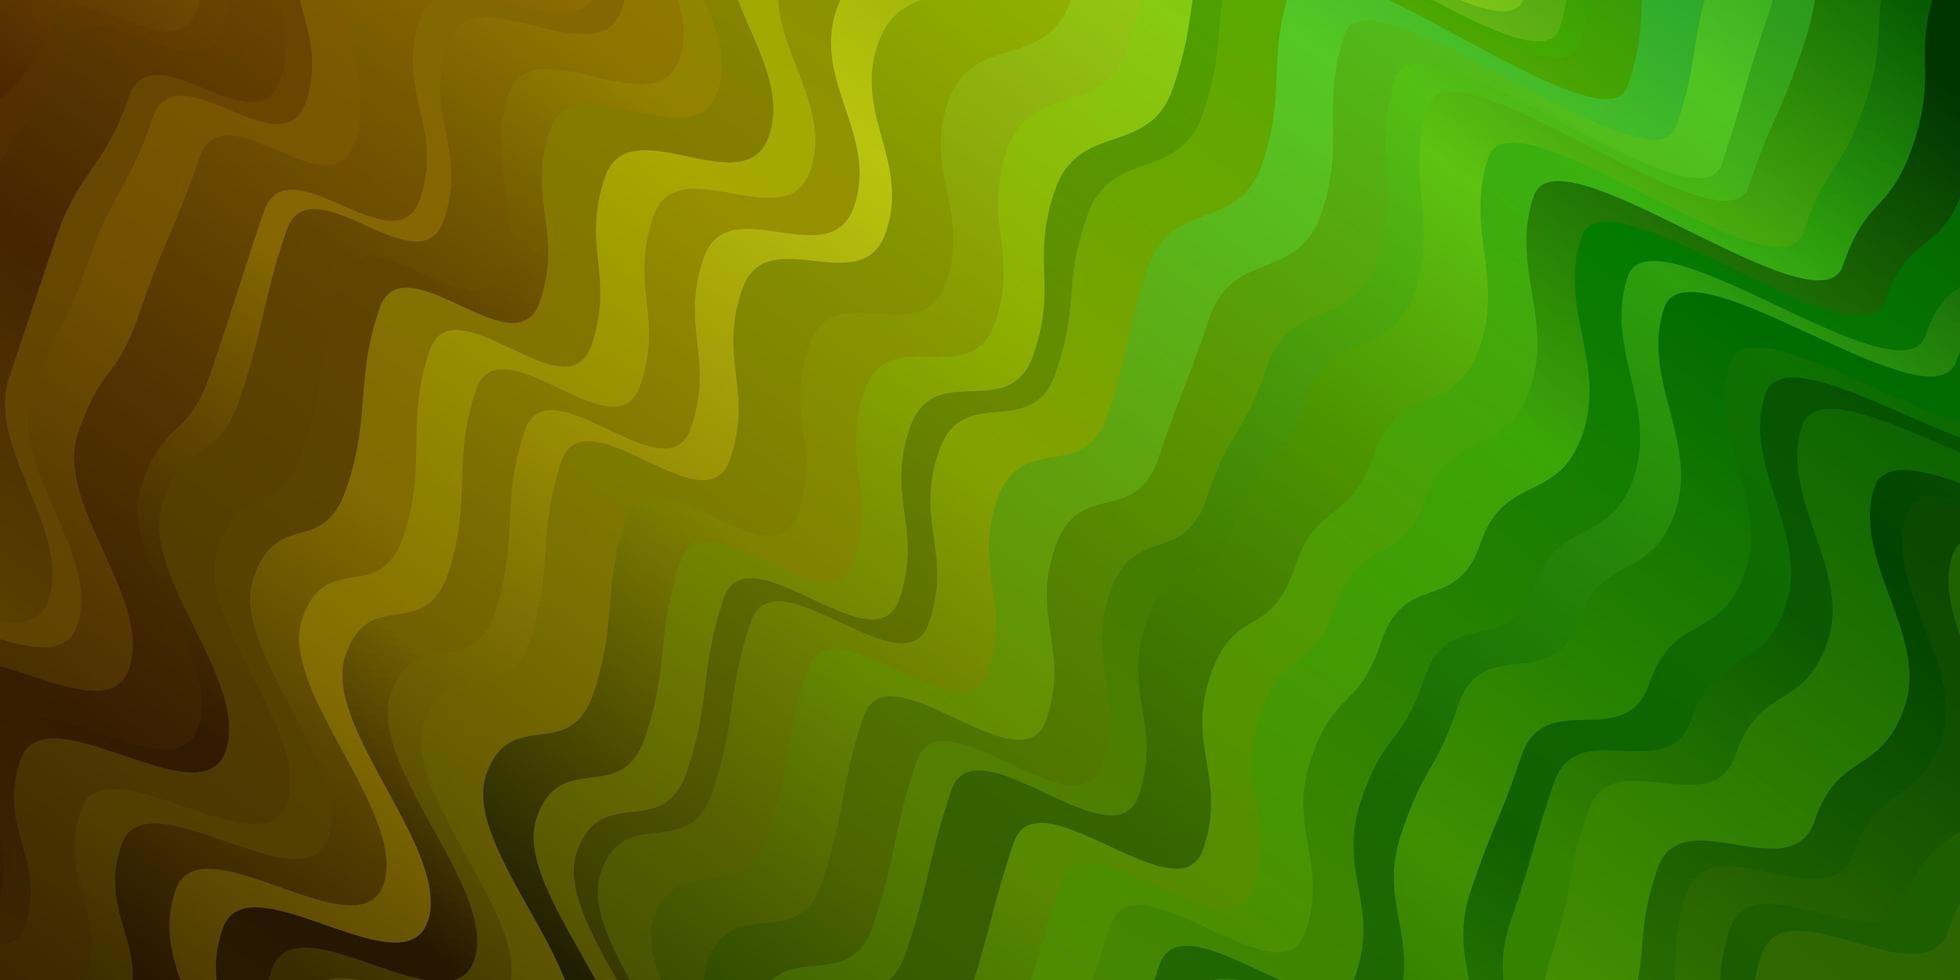 motif vectoriel vert clair et jaune avec des courbes. illustration dégradée dans un style simple avec des arcs. modèle pour livrets, dépliants.